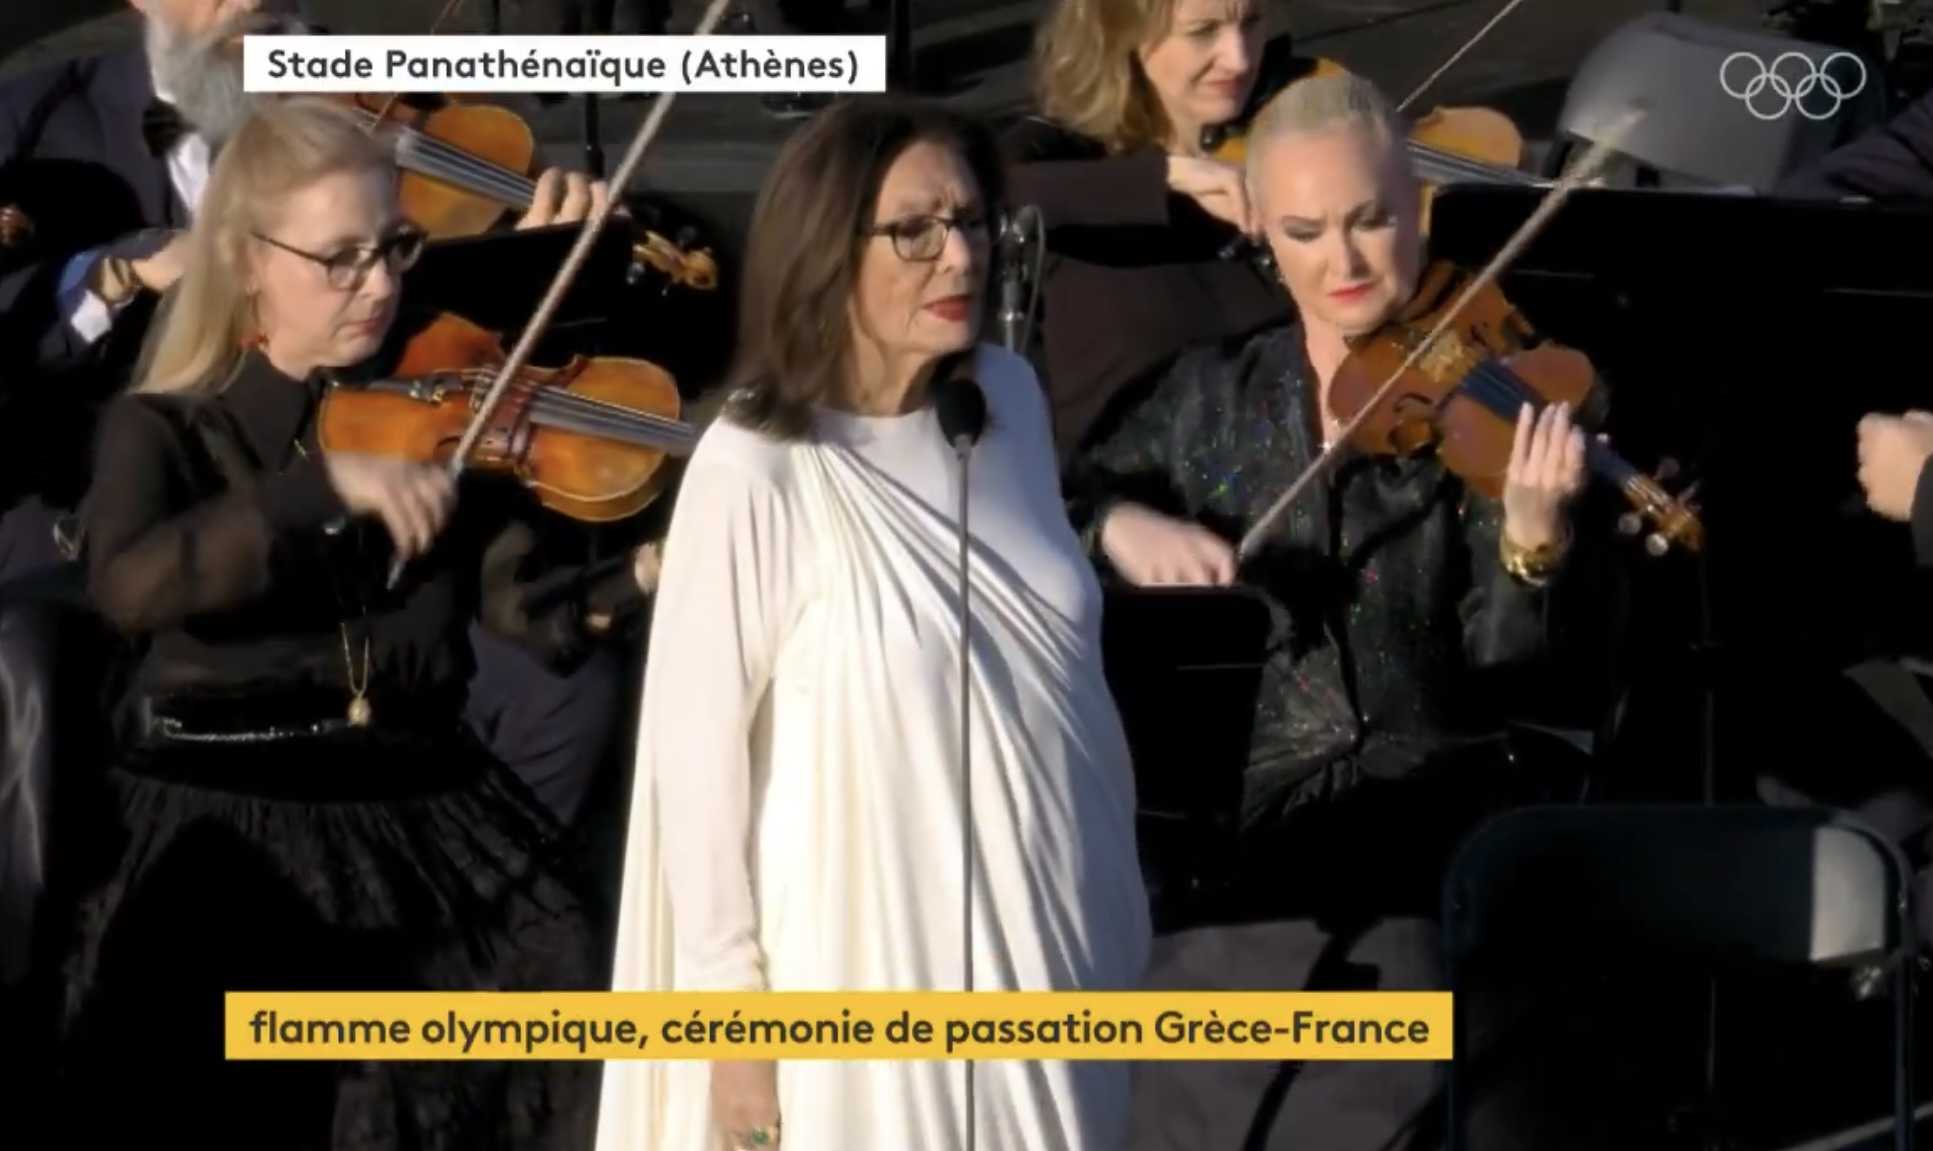 Μας έκαναν υπερήφανους: Ο Νίκος Αλιάγας παρουσιάζει και η Νανα Μουσχουρη ερμηνεύει τους εθνικούς ύμνους Ελλάδας και Γαλλίας